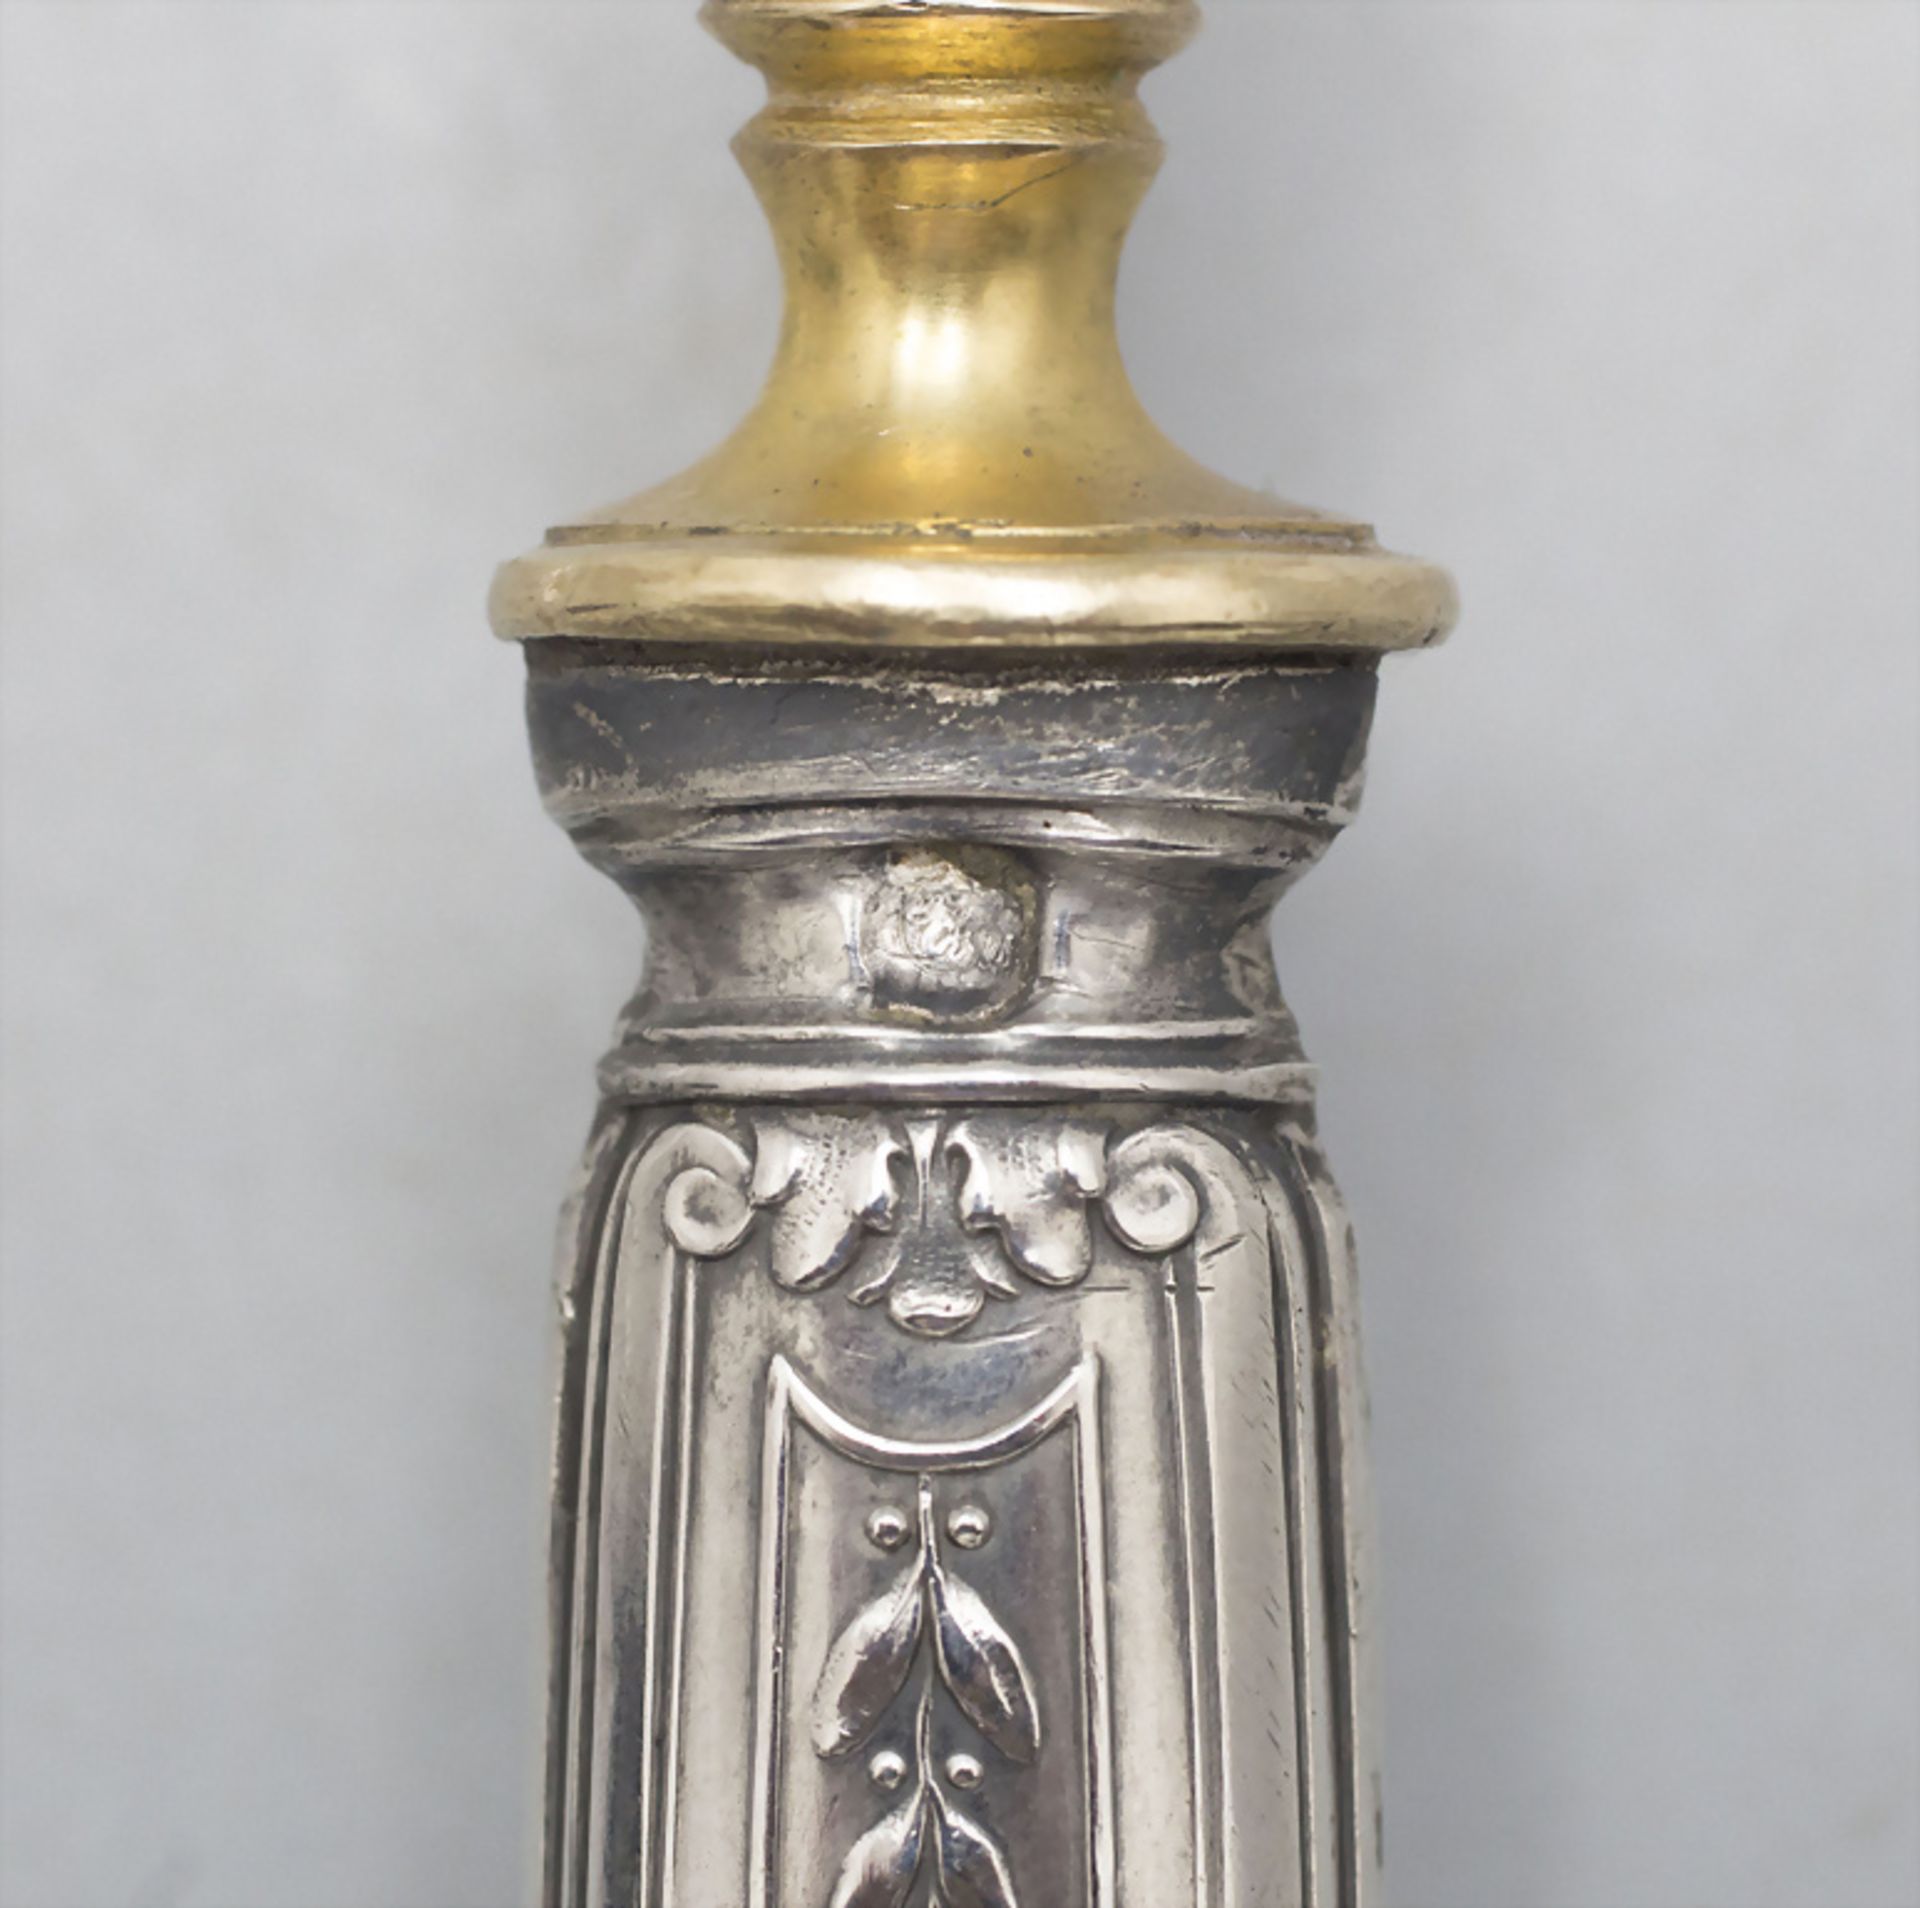 Saucenkelle / A silver gravy ladle, Paris, um 1900 - Image 2 of 5